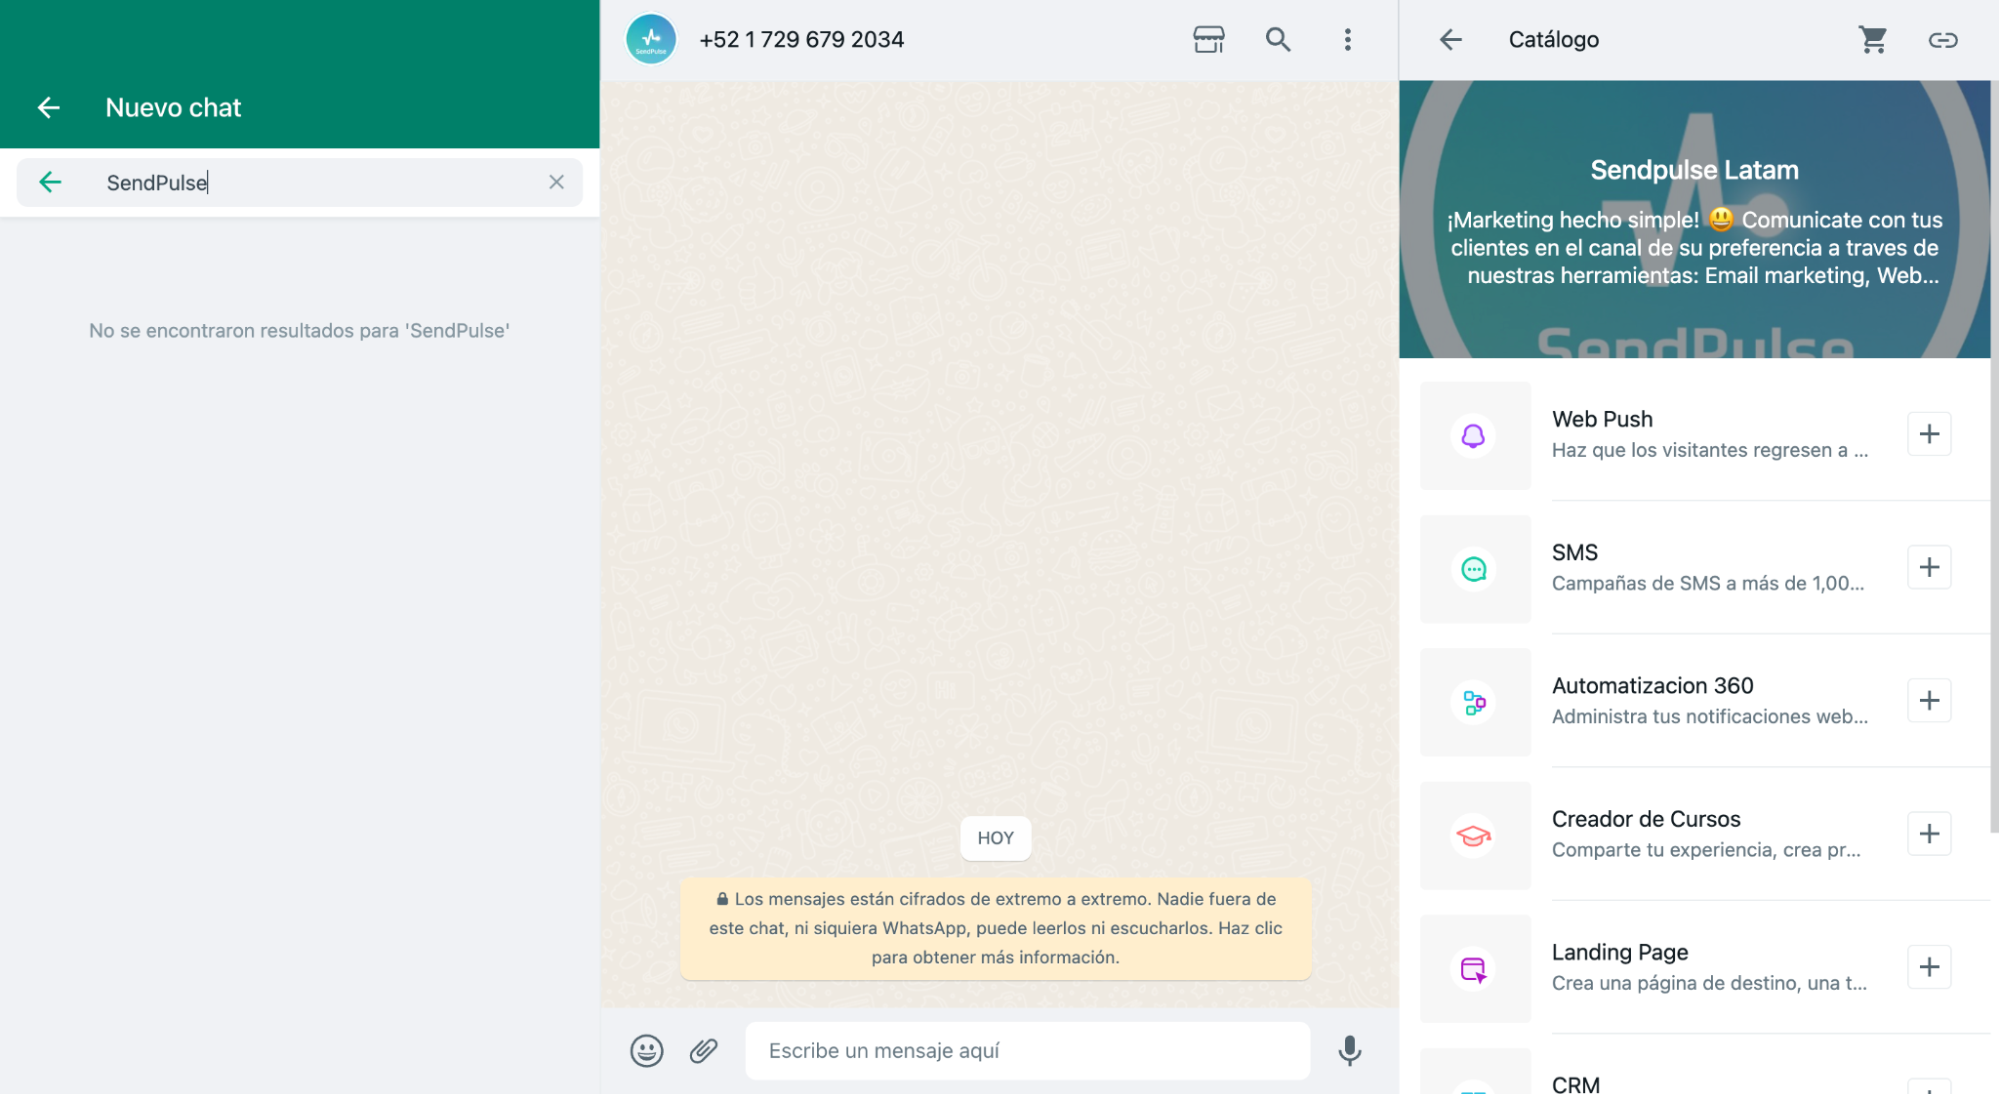 Una API para WhatsApp te brinda importantes herramientas para tu negocio